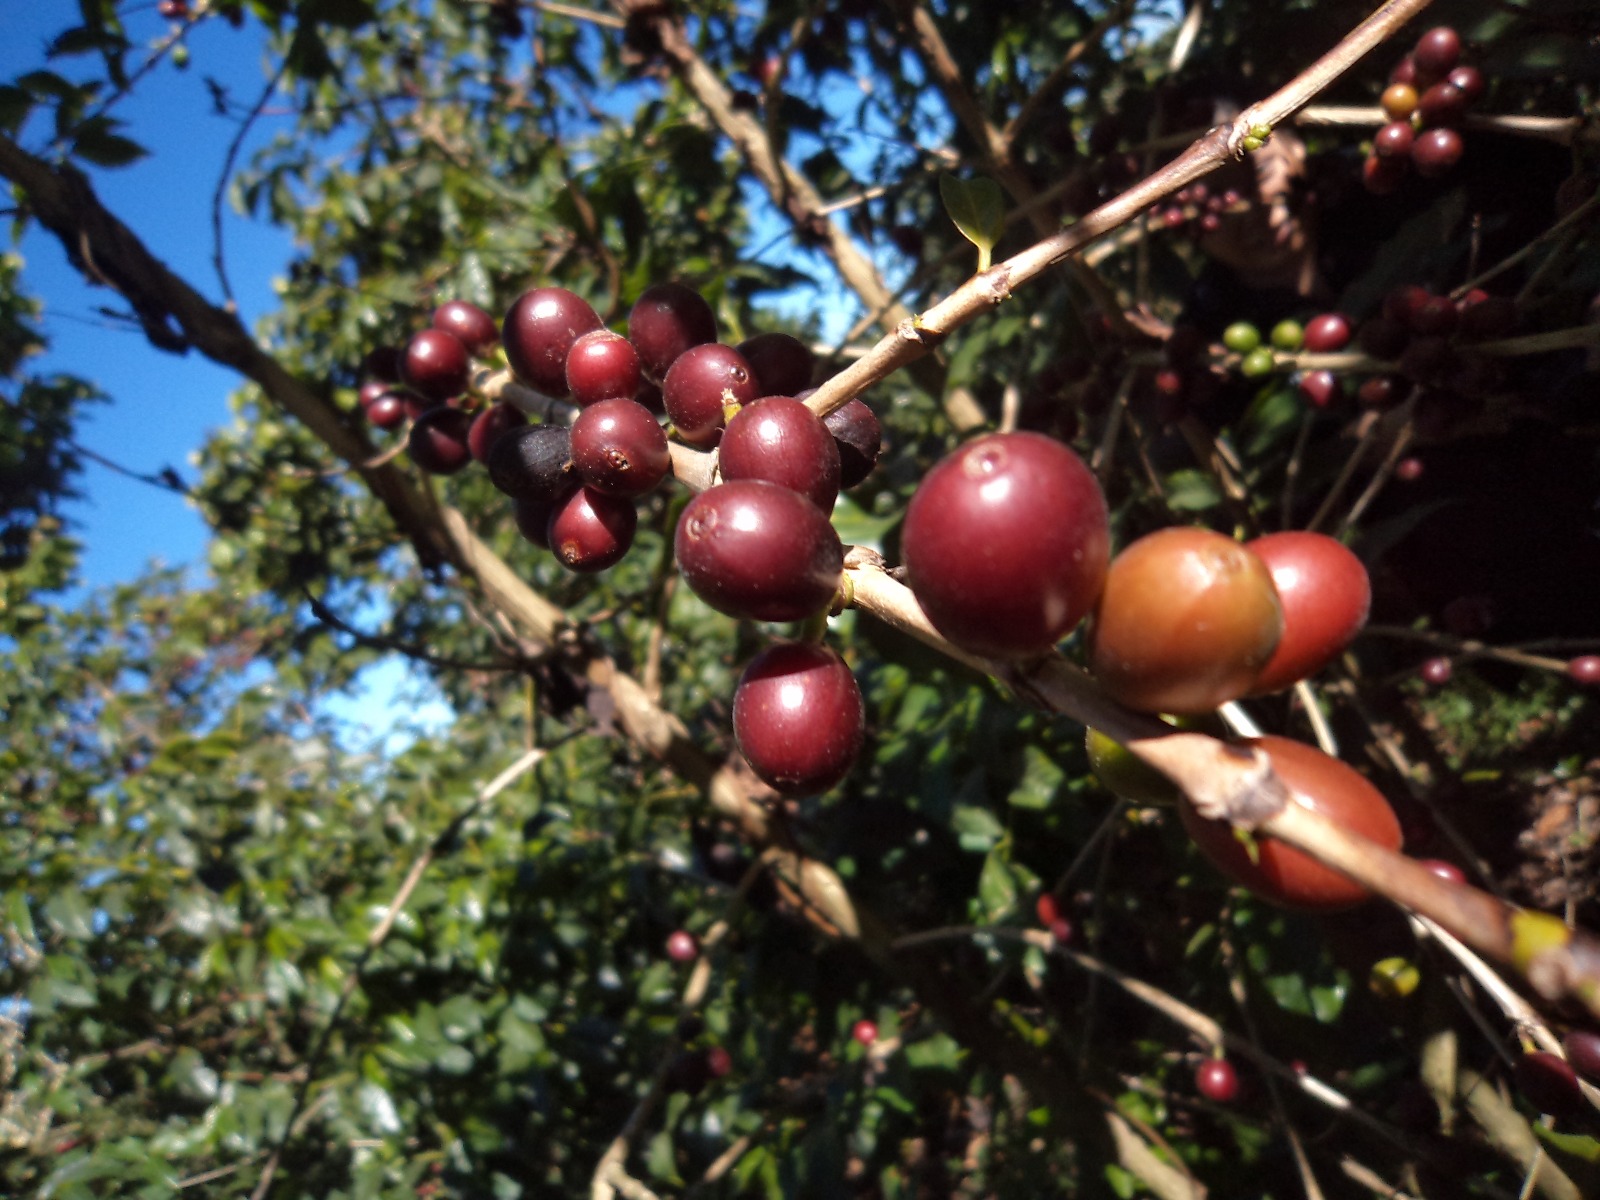 Coffee Cherry Plants at Finca Loma La Gloria in El Salvador